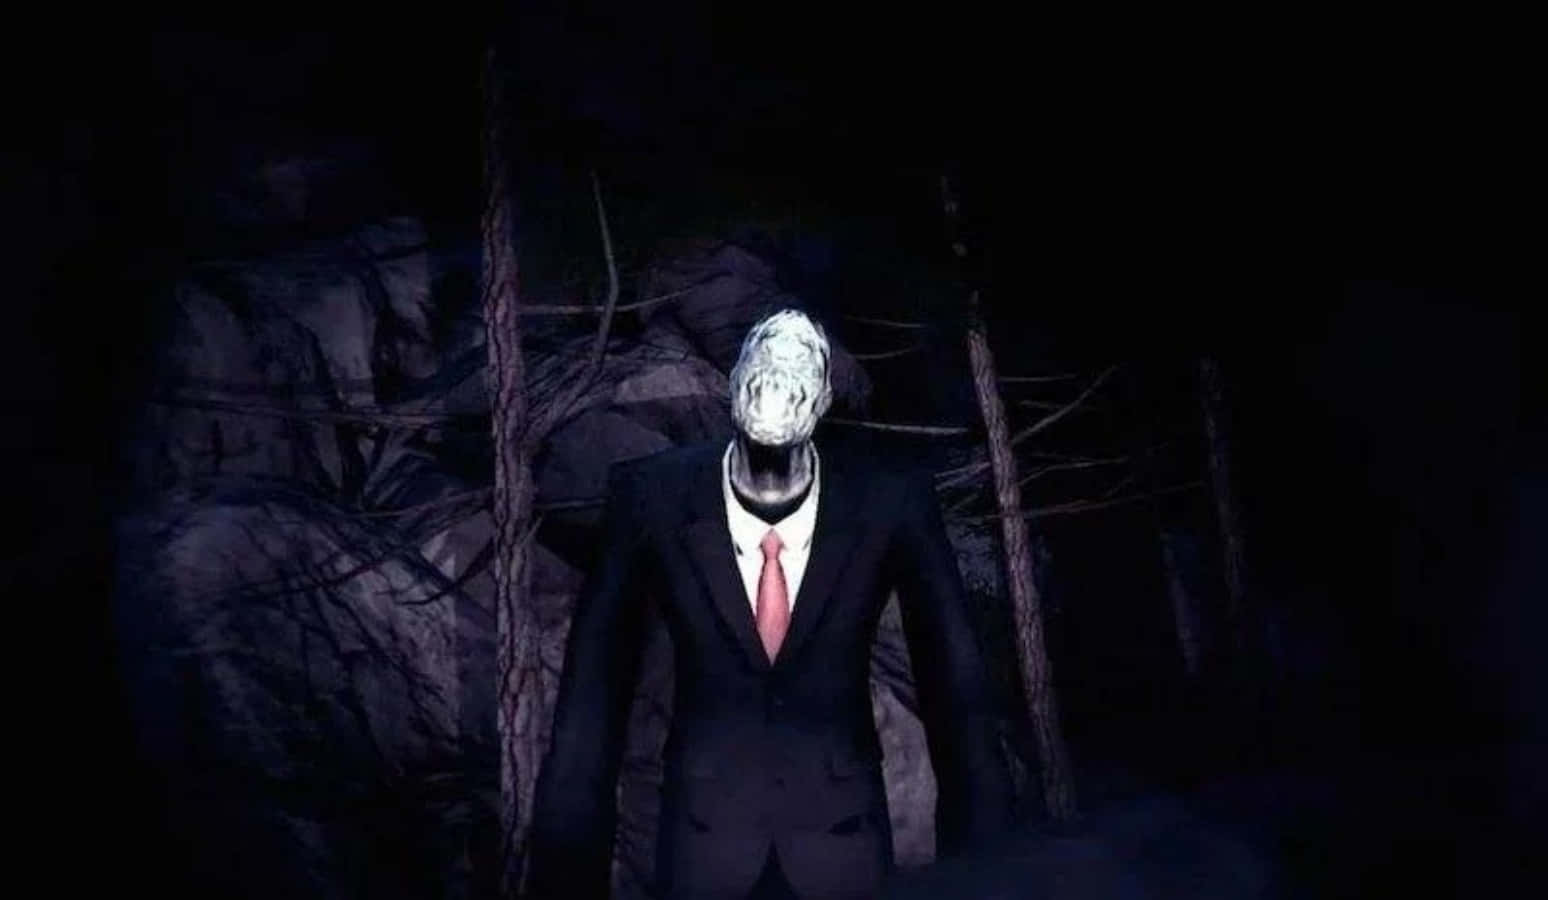 Creepy Face Slender Man Suit Picture